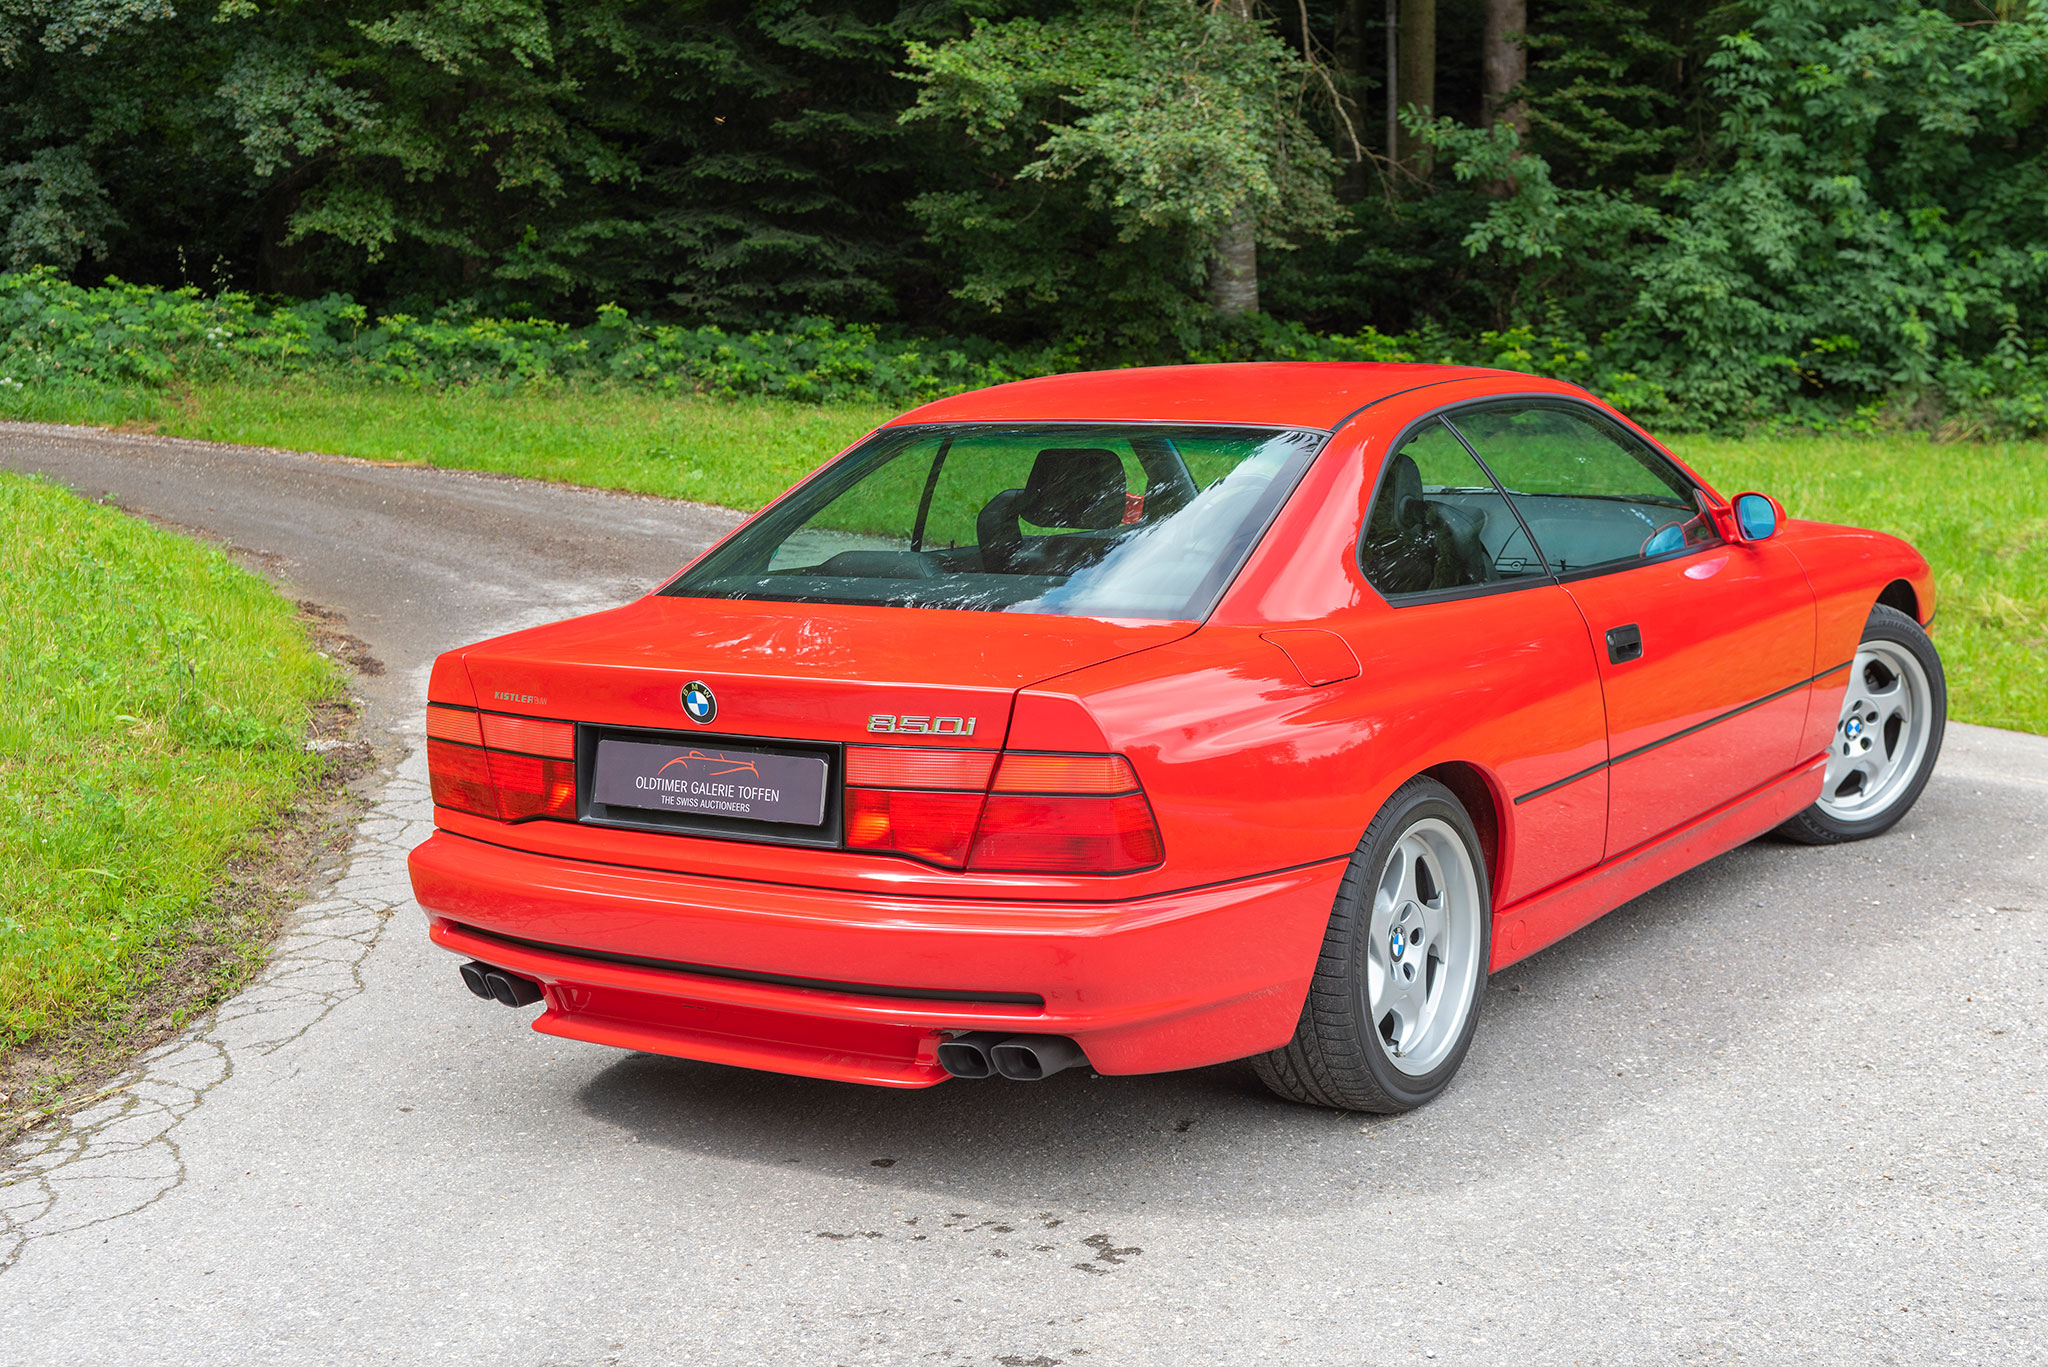 1992 BMW 850i la découpe de l'arrière rompt avec la fluidité de la carrosserie.